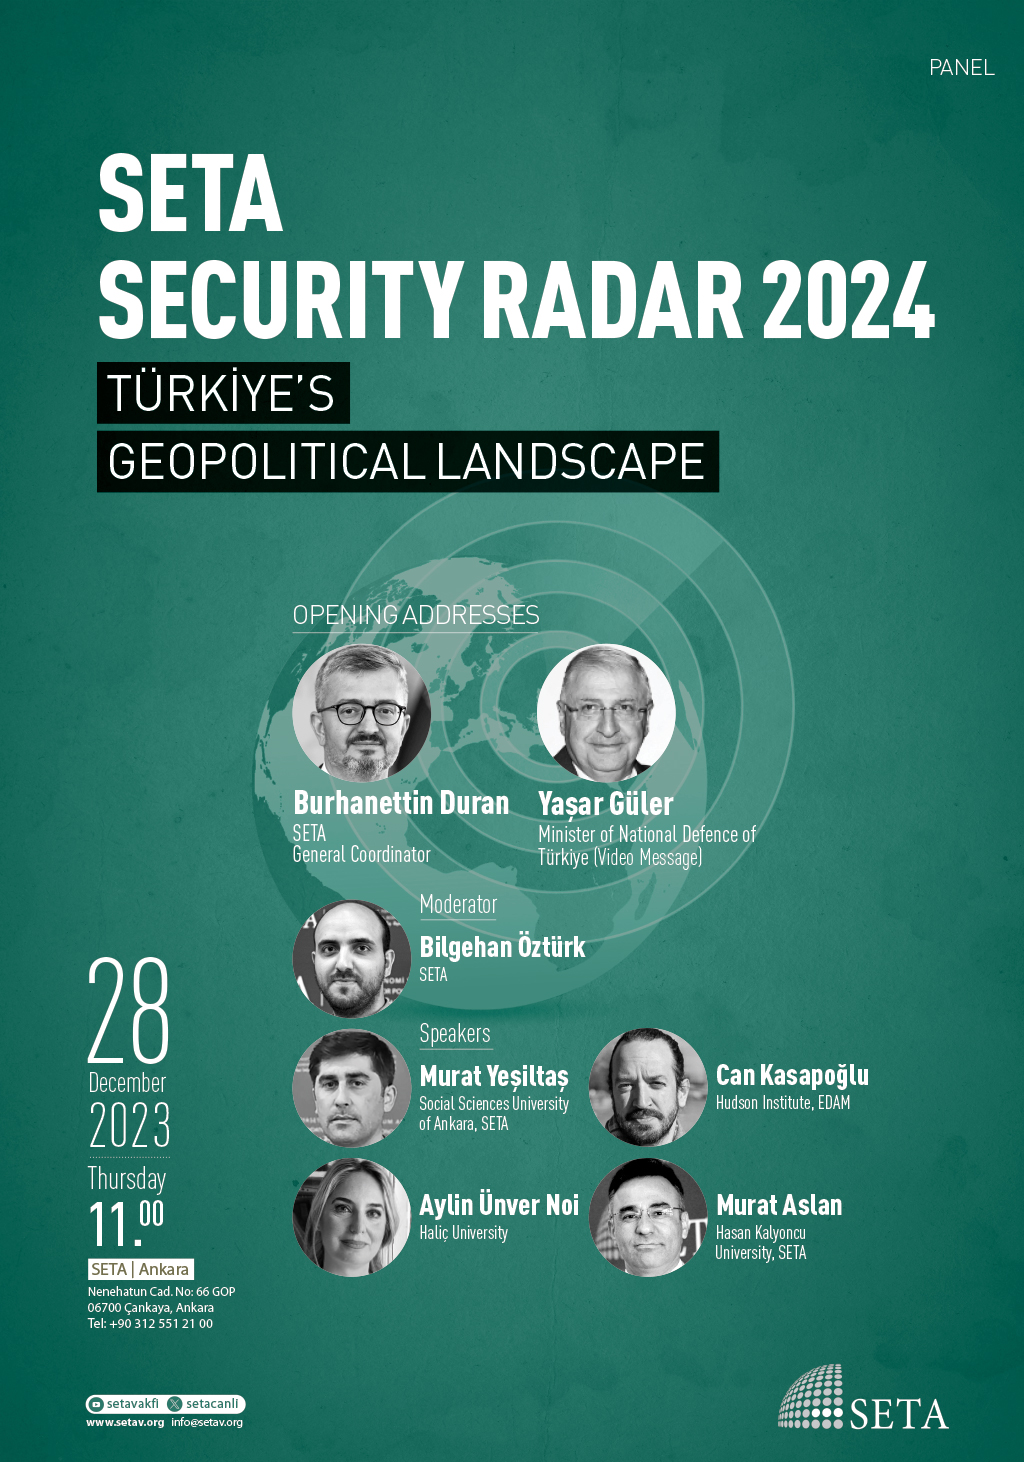 Panel: SETA Security Radar 2024 | Türkiye’s Geopolitical Landscape